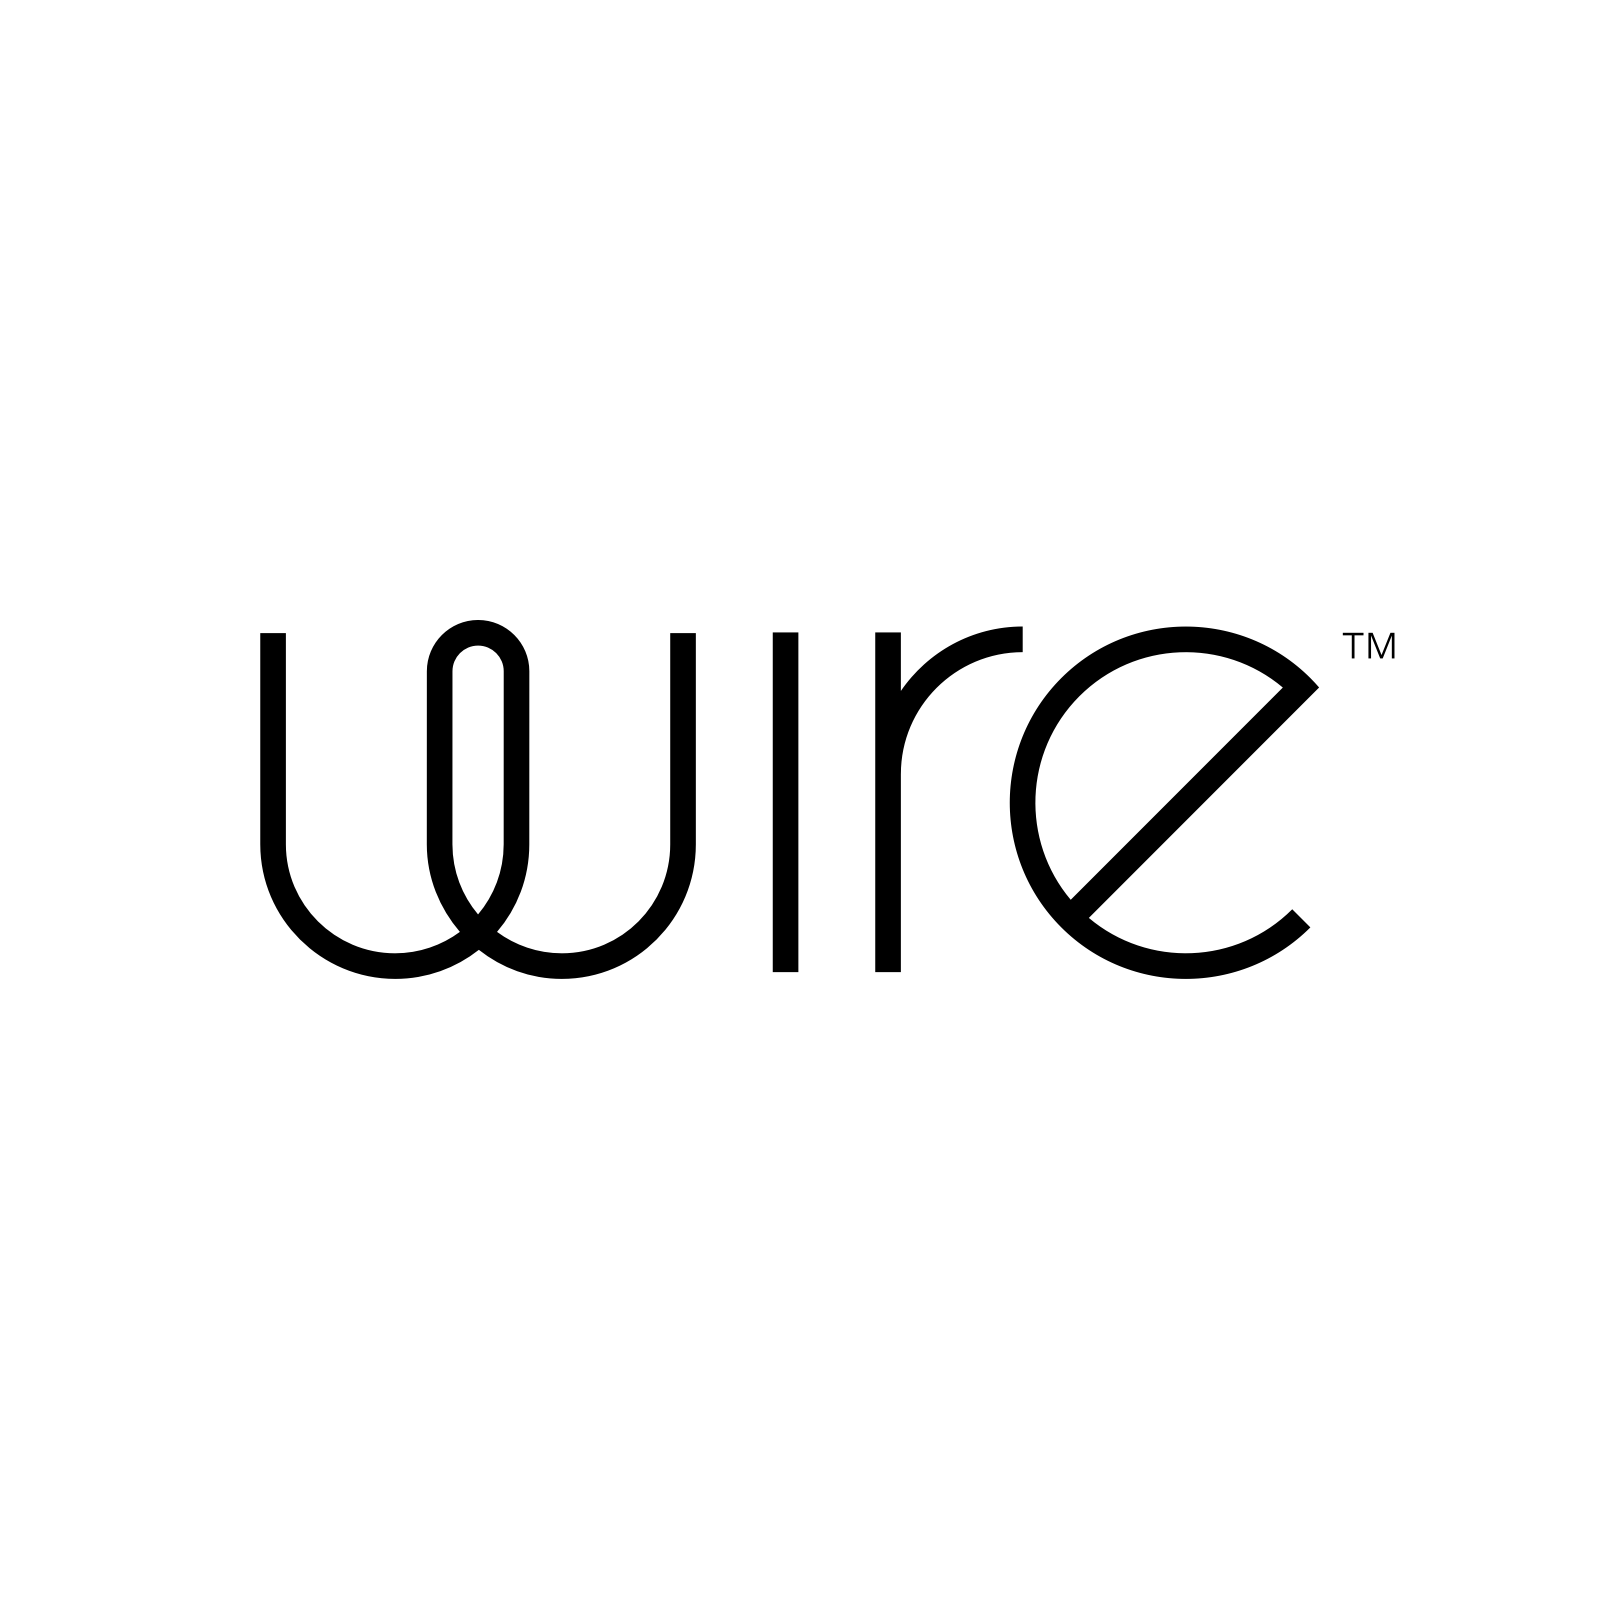 telegram alternative wire